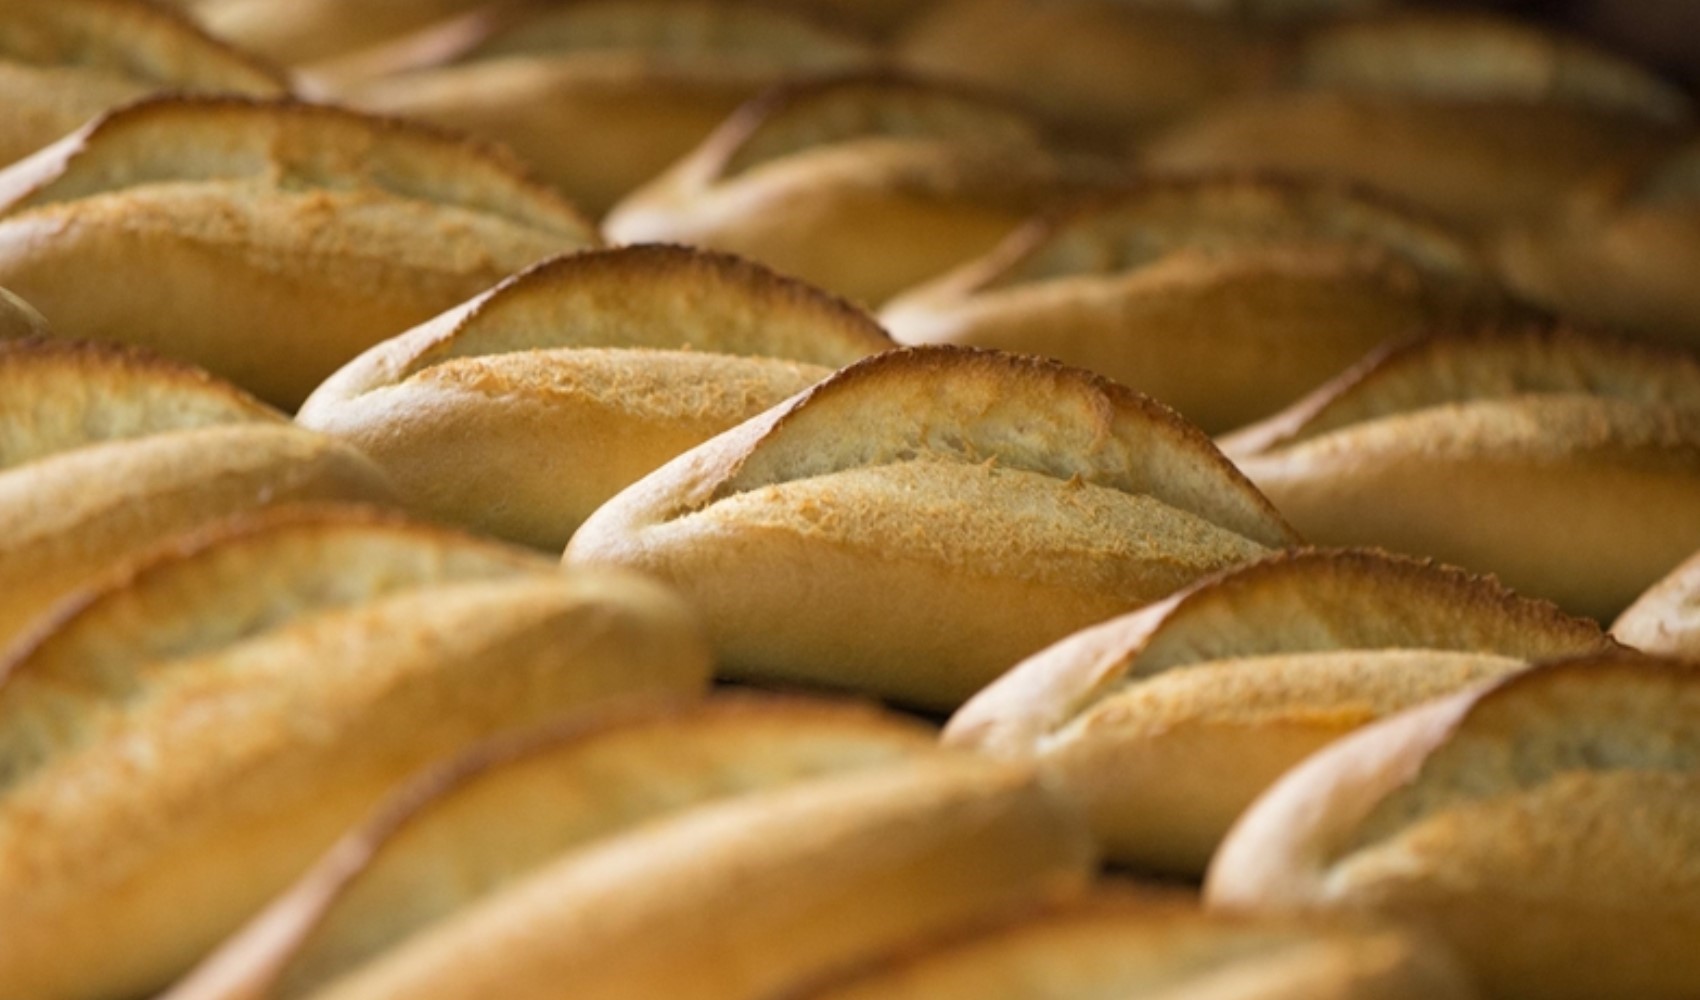 İzmir’de ekmeğe zam: Gramajı düştü fiyatı yükseldi